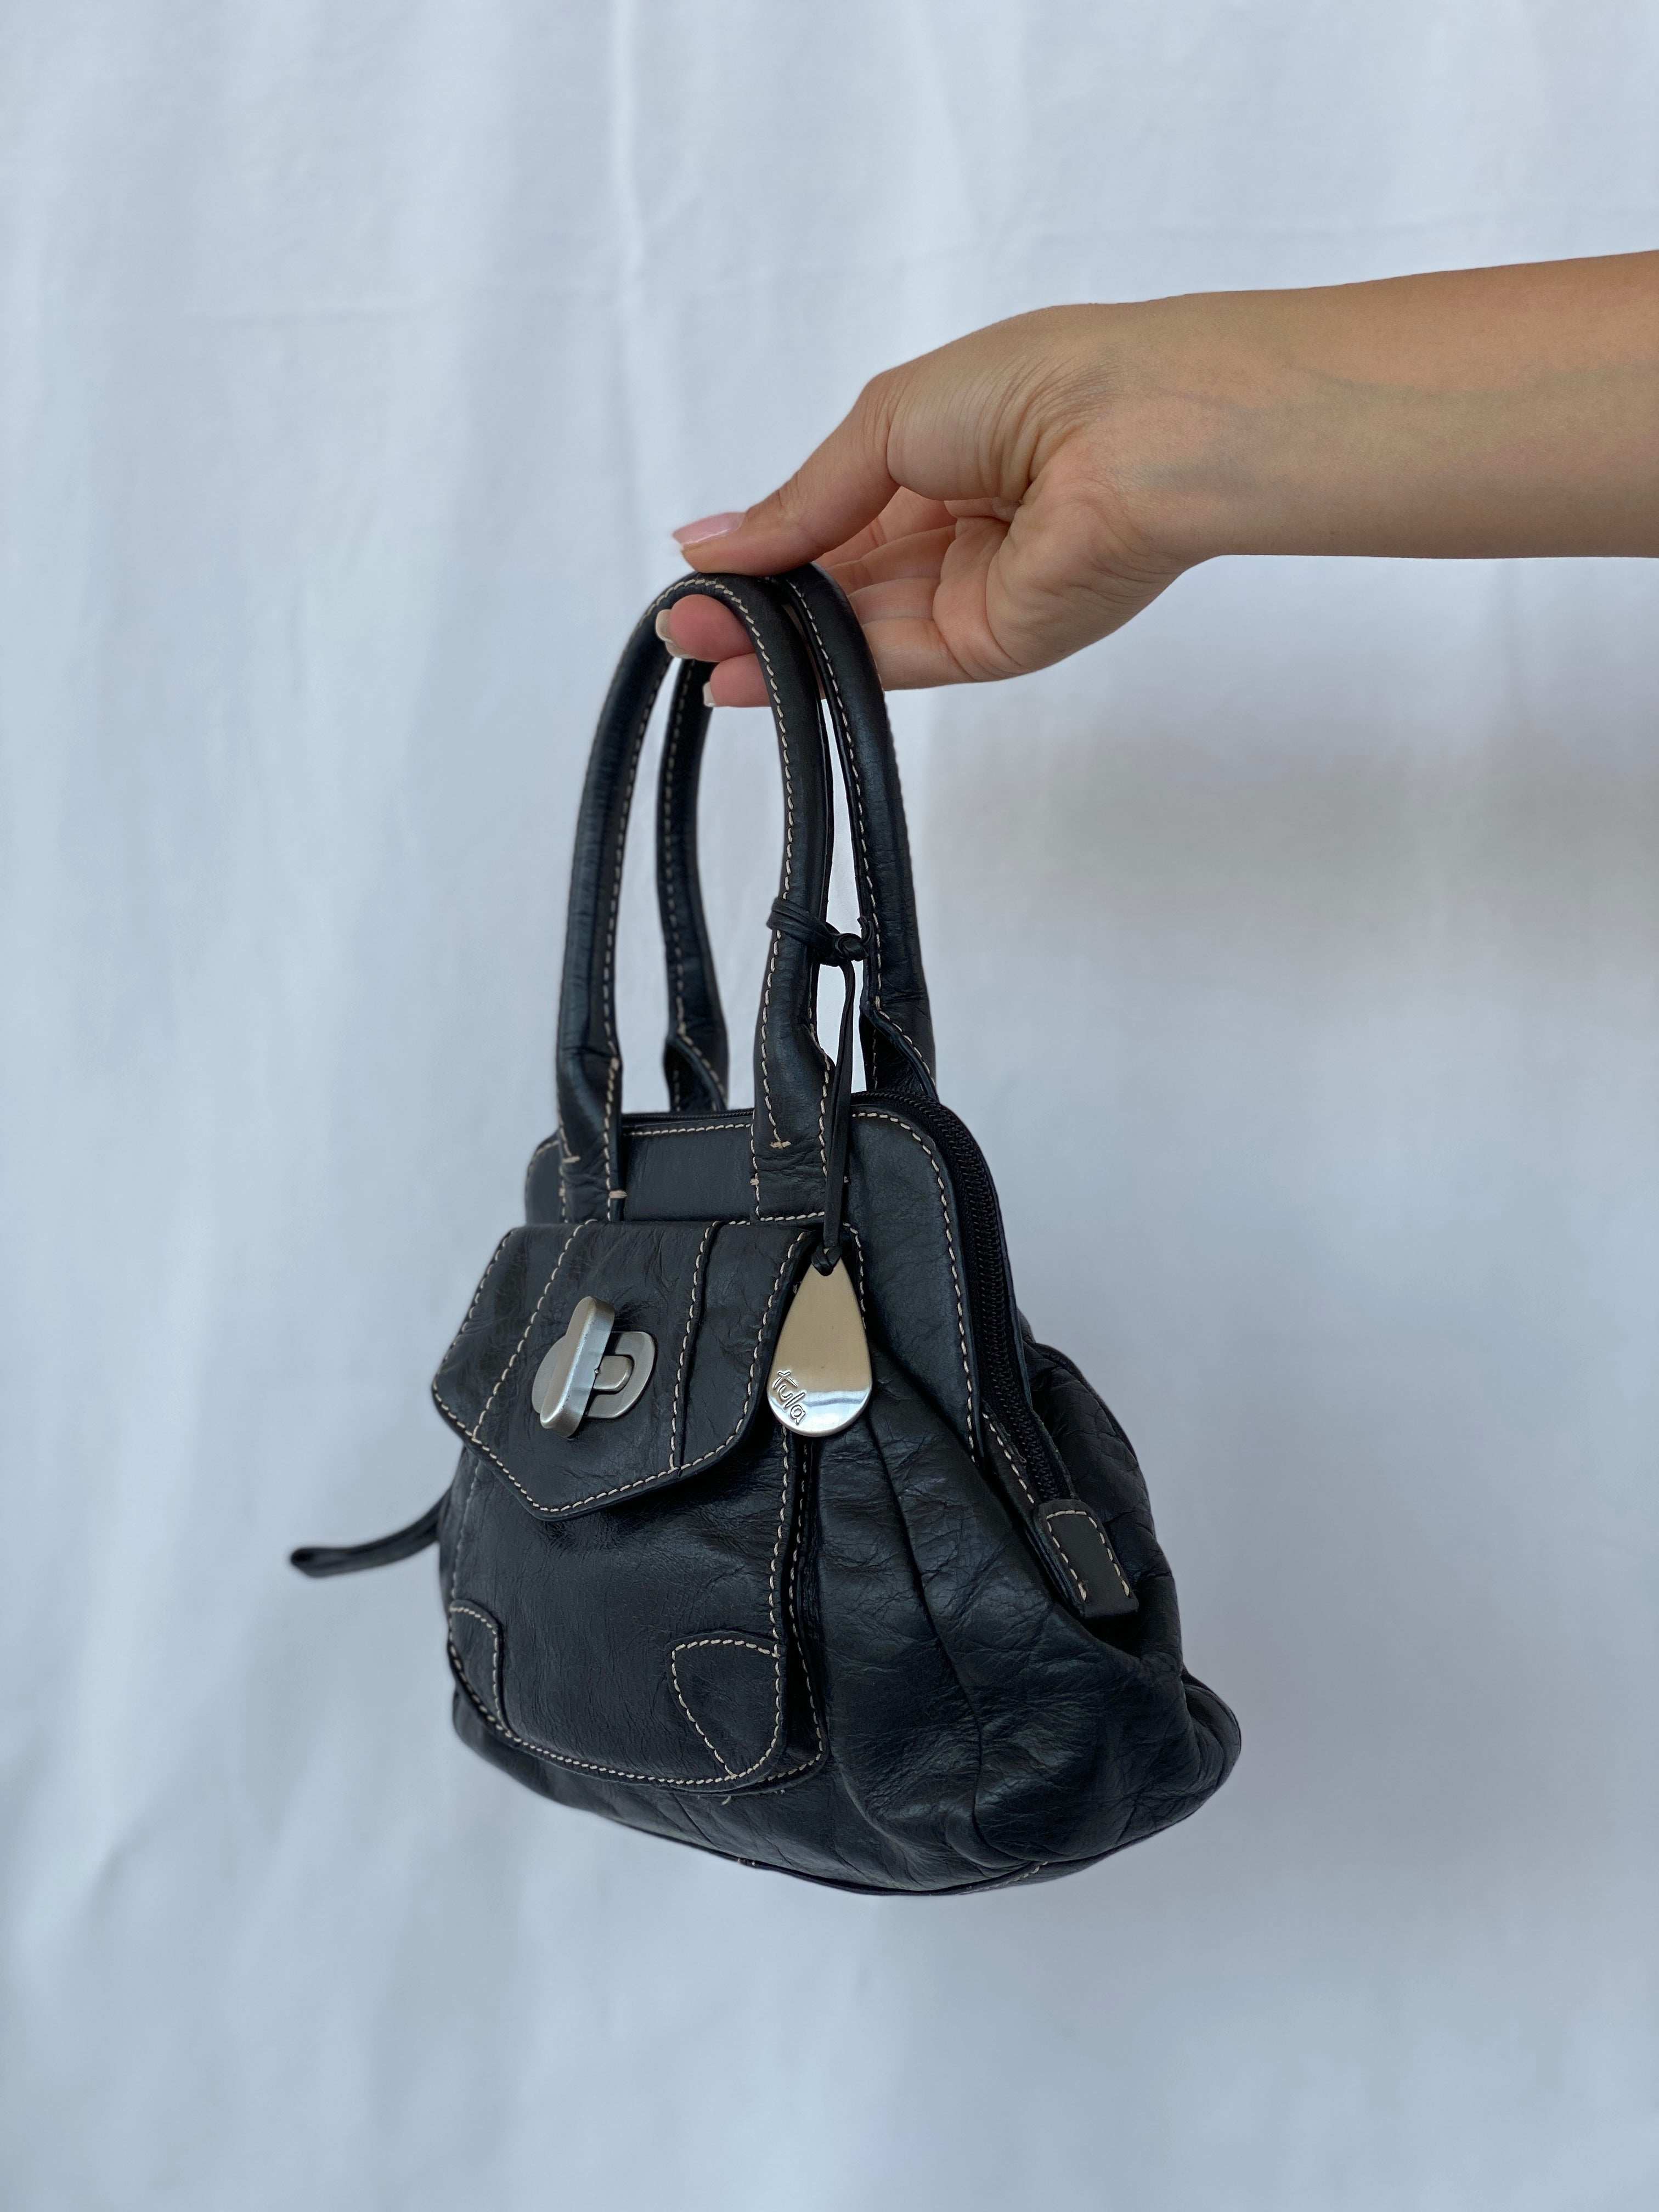 Vintage Y2K Tula Mini Leather Handbag - Balagan Vintage Handbags black leather, mini handbag, NEW IN, Y2K